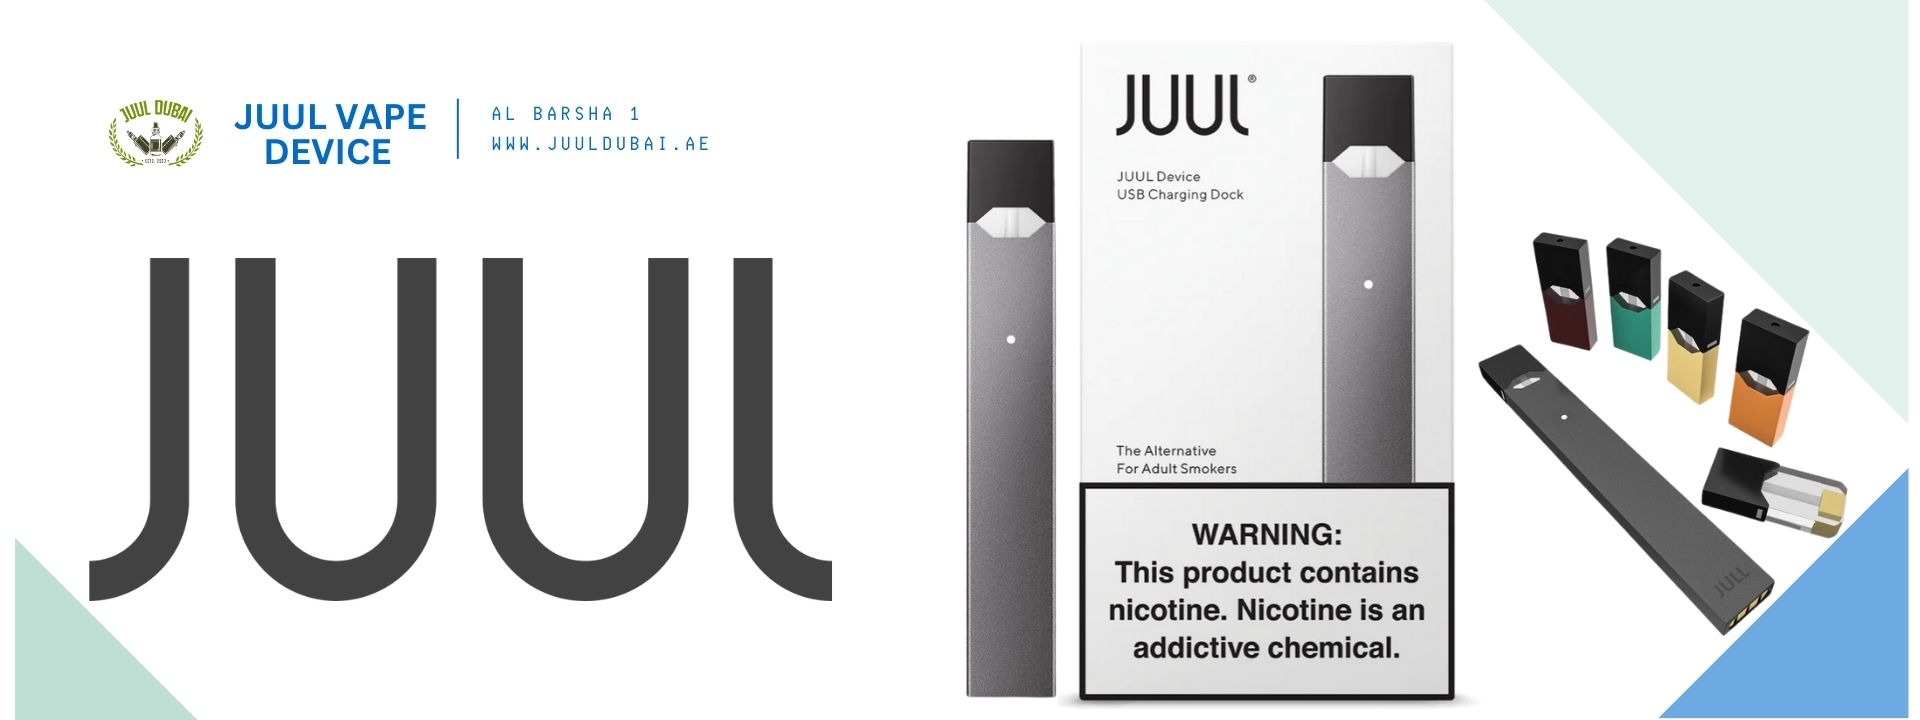 Buy Original Juul Device in UAE